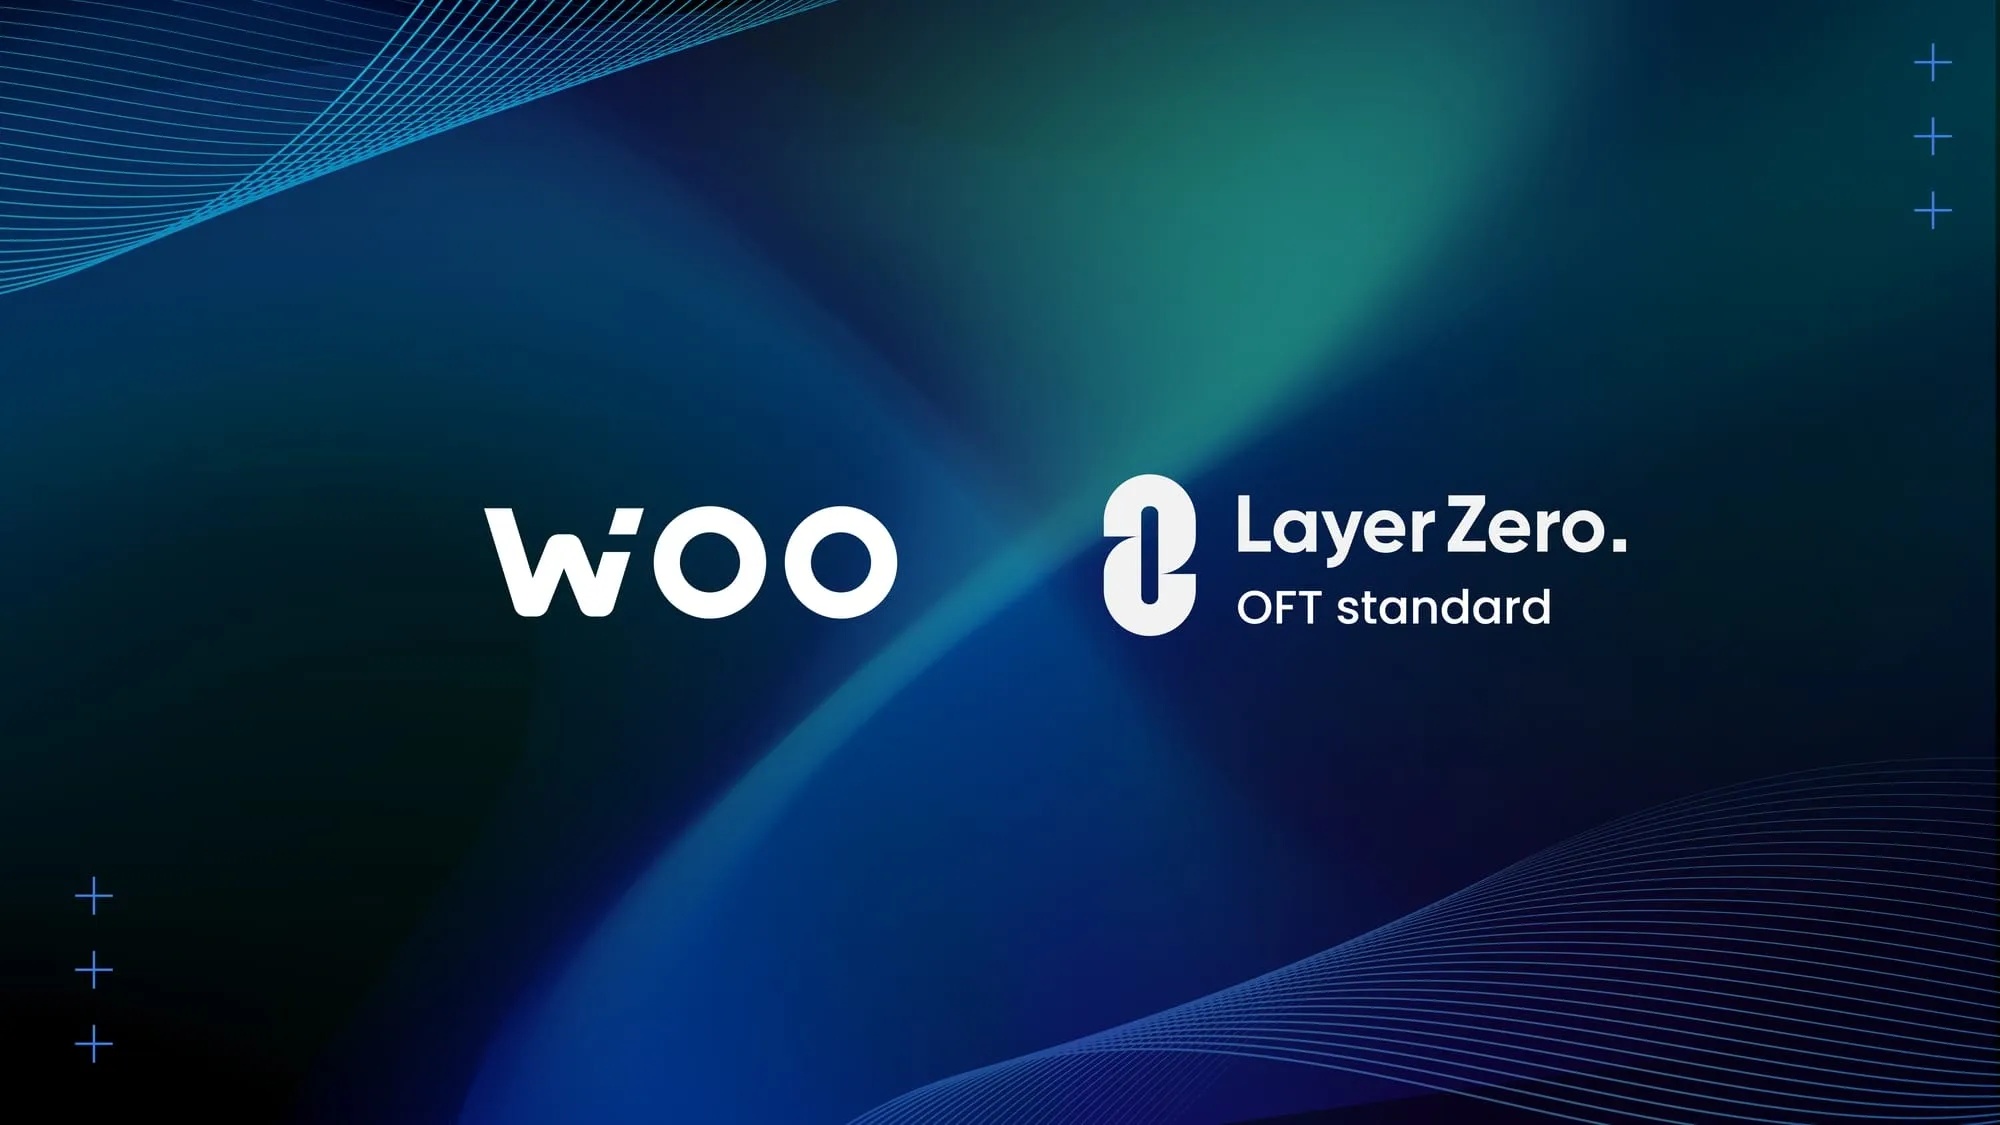 WOO 策略性採用 LayerZero 的 OFT 標準，進一步最大化代幣賦能